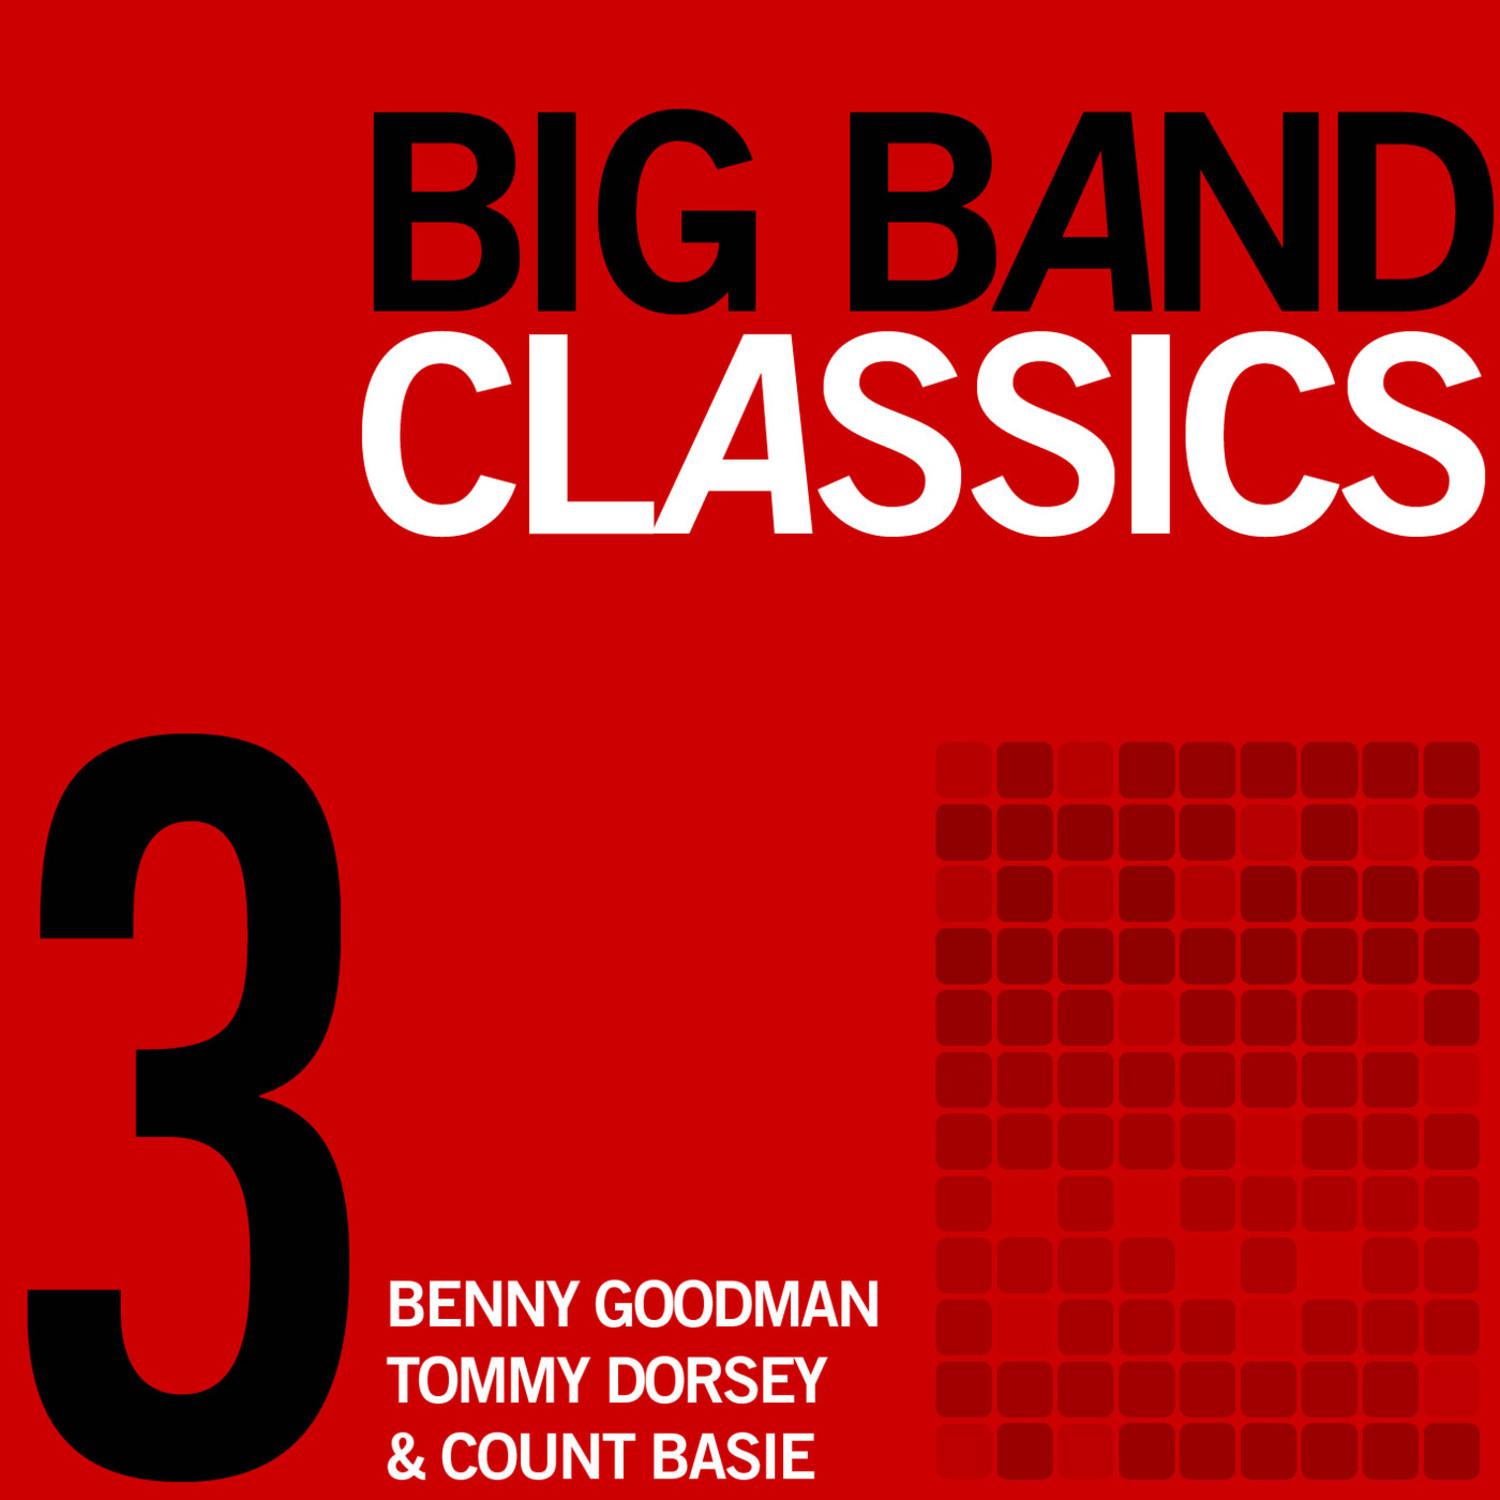 Big Band Classics, Volume 3